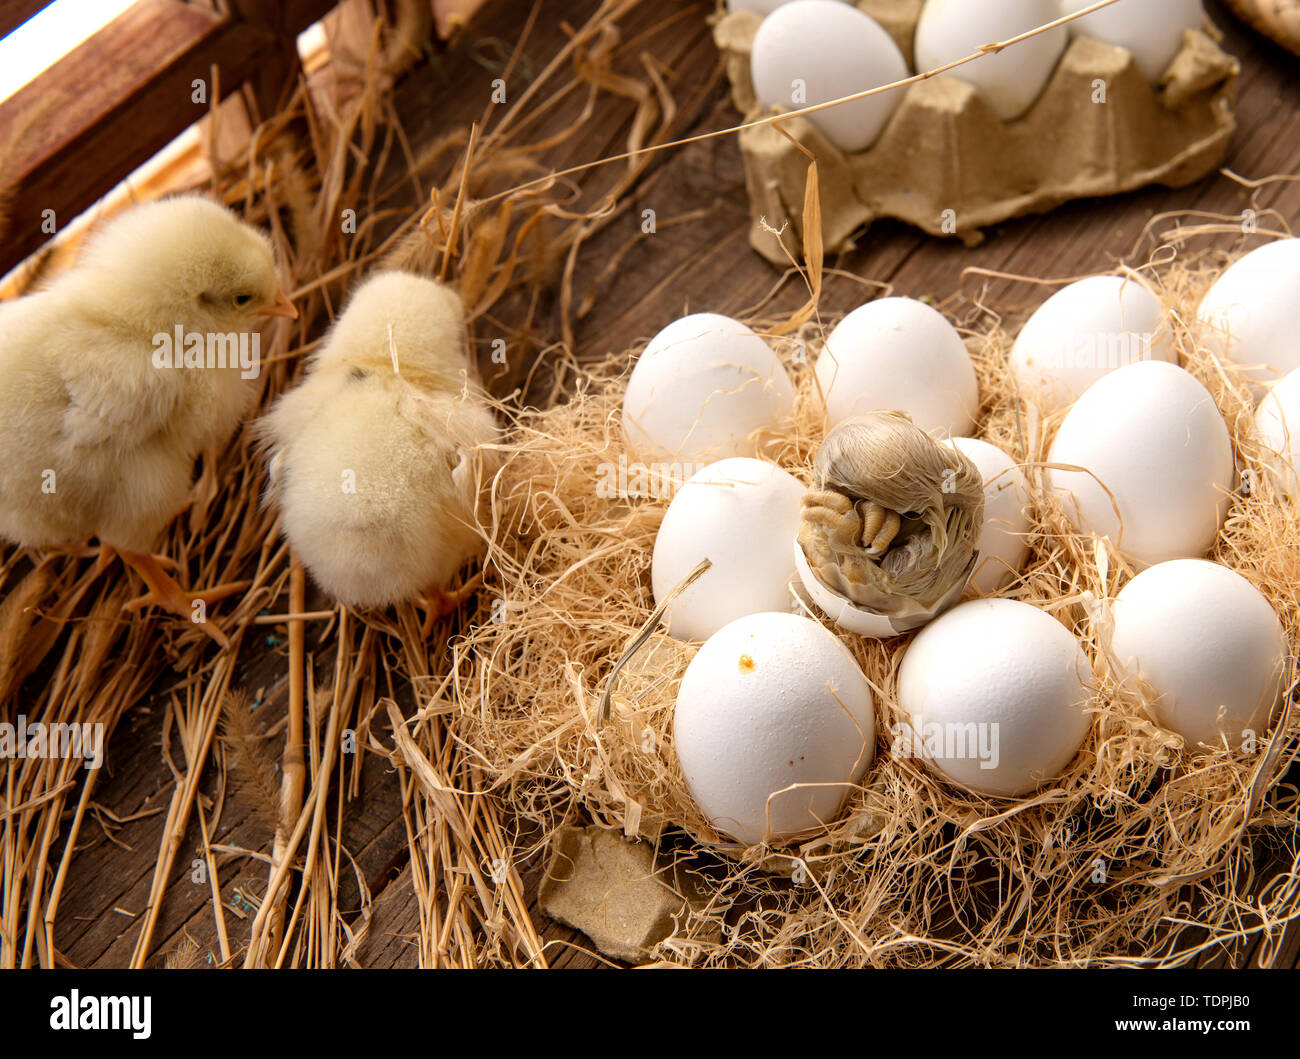 Live Perlen, Embryonen, Eier, haarigen Eier Stockfotografie - Alamy